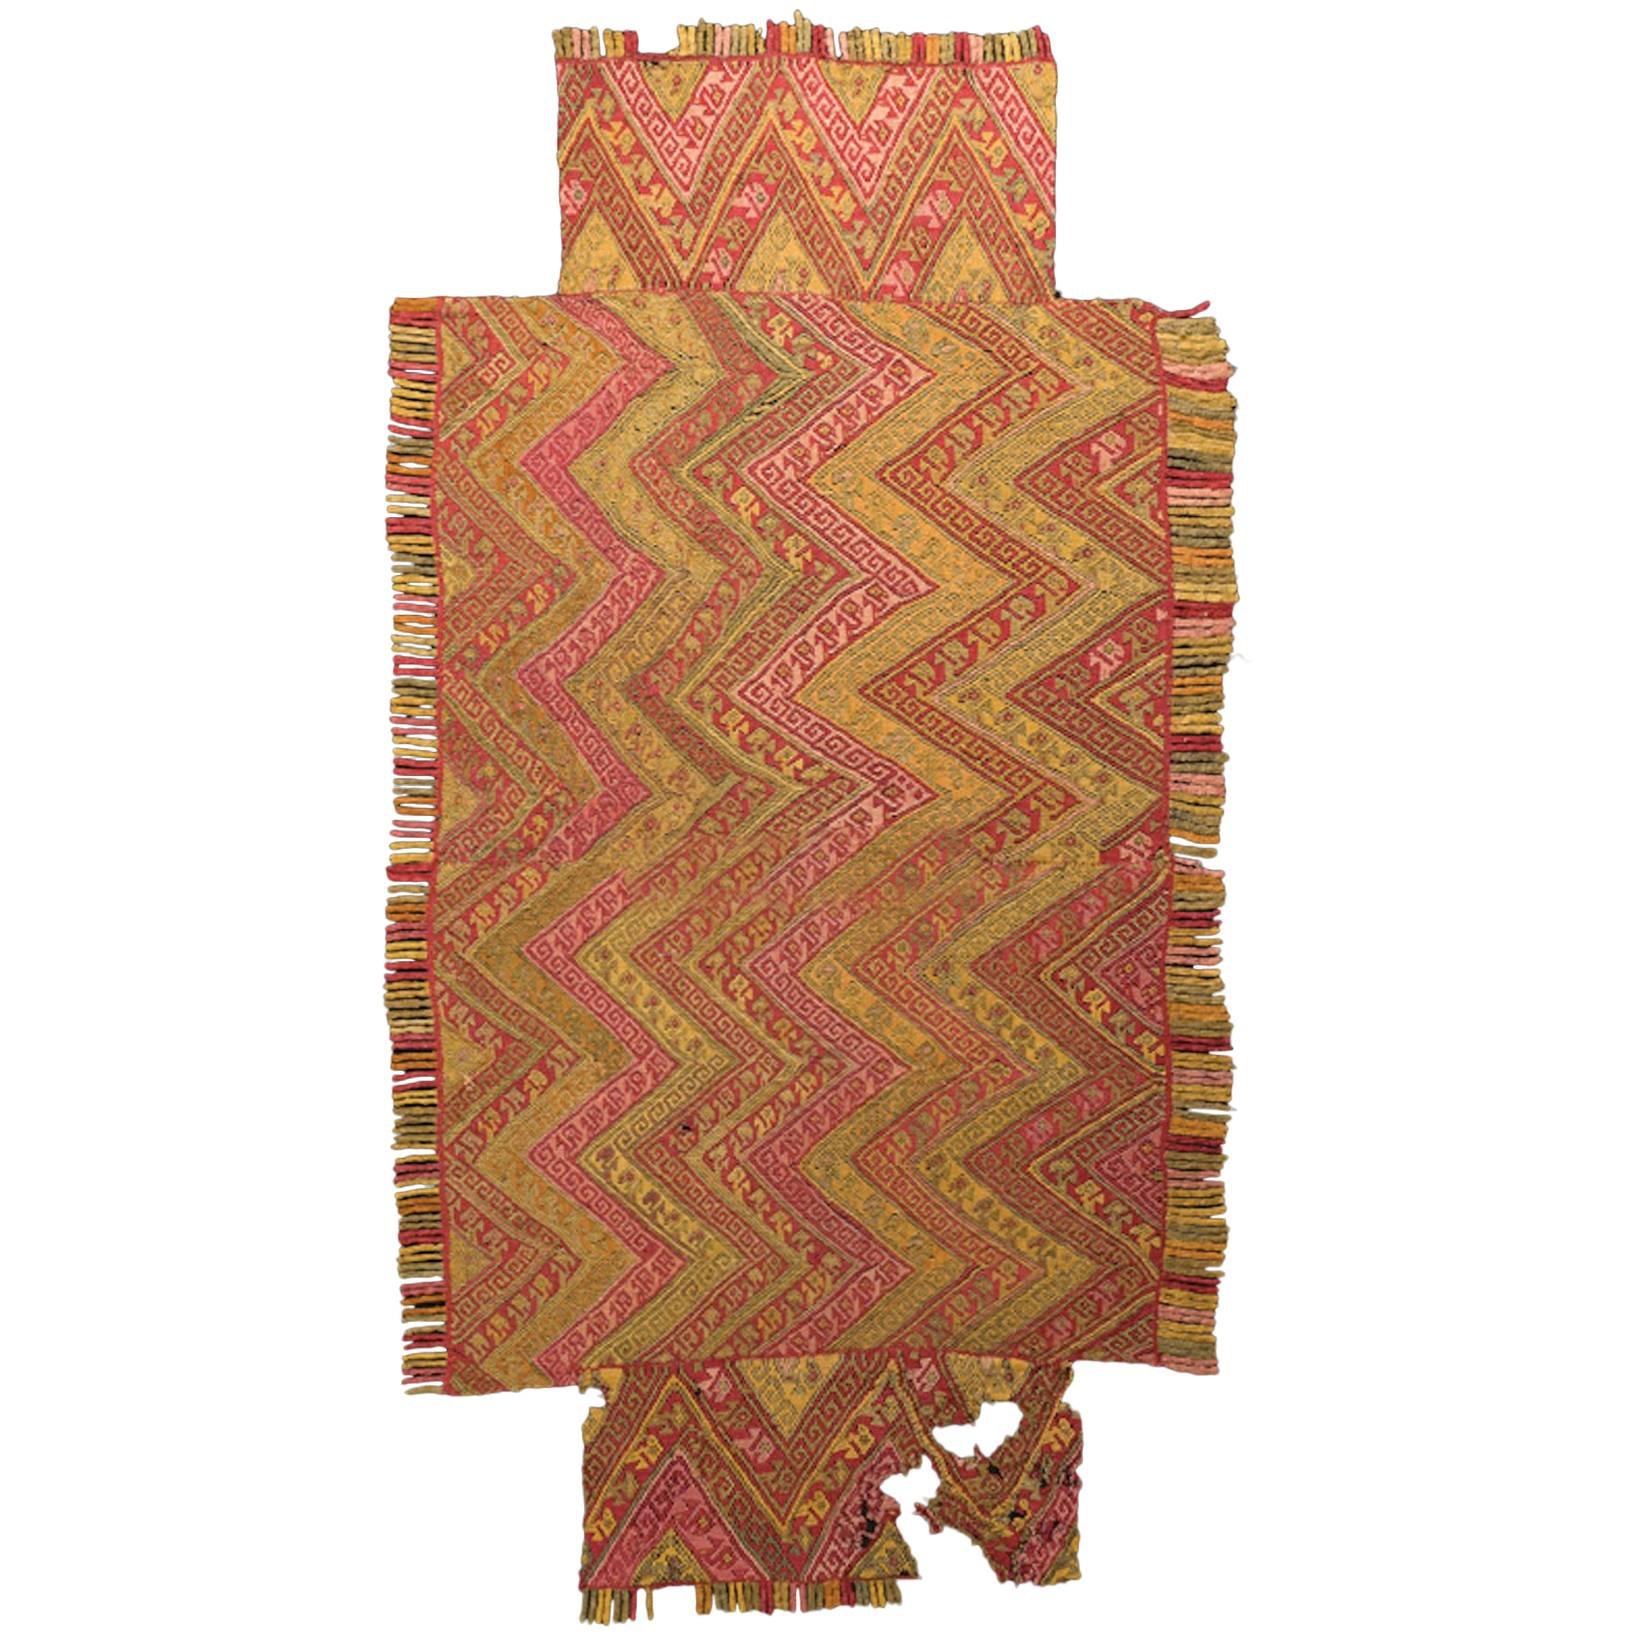 Textile de Chimu précolombien, motif de méandre et frange, Pérou vers 900 à 1300 avant J.-C.